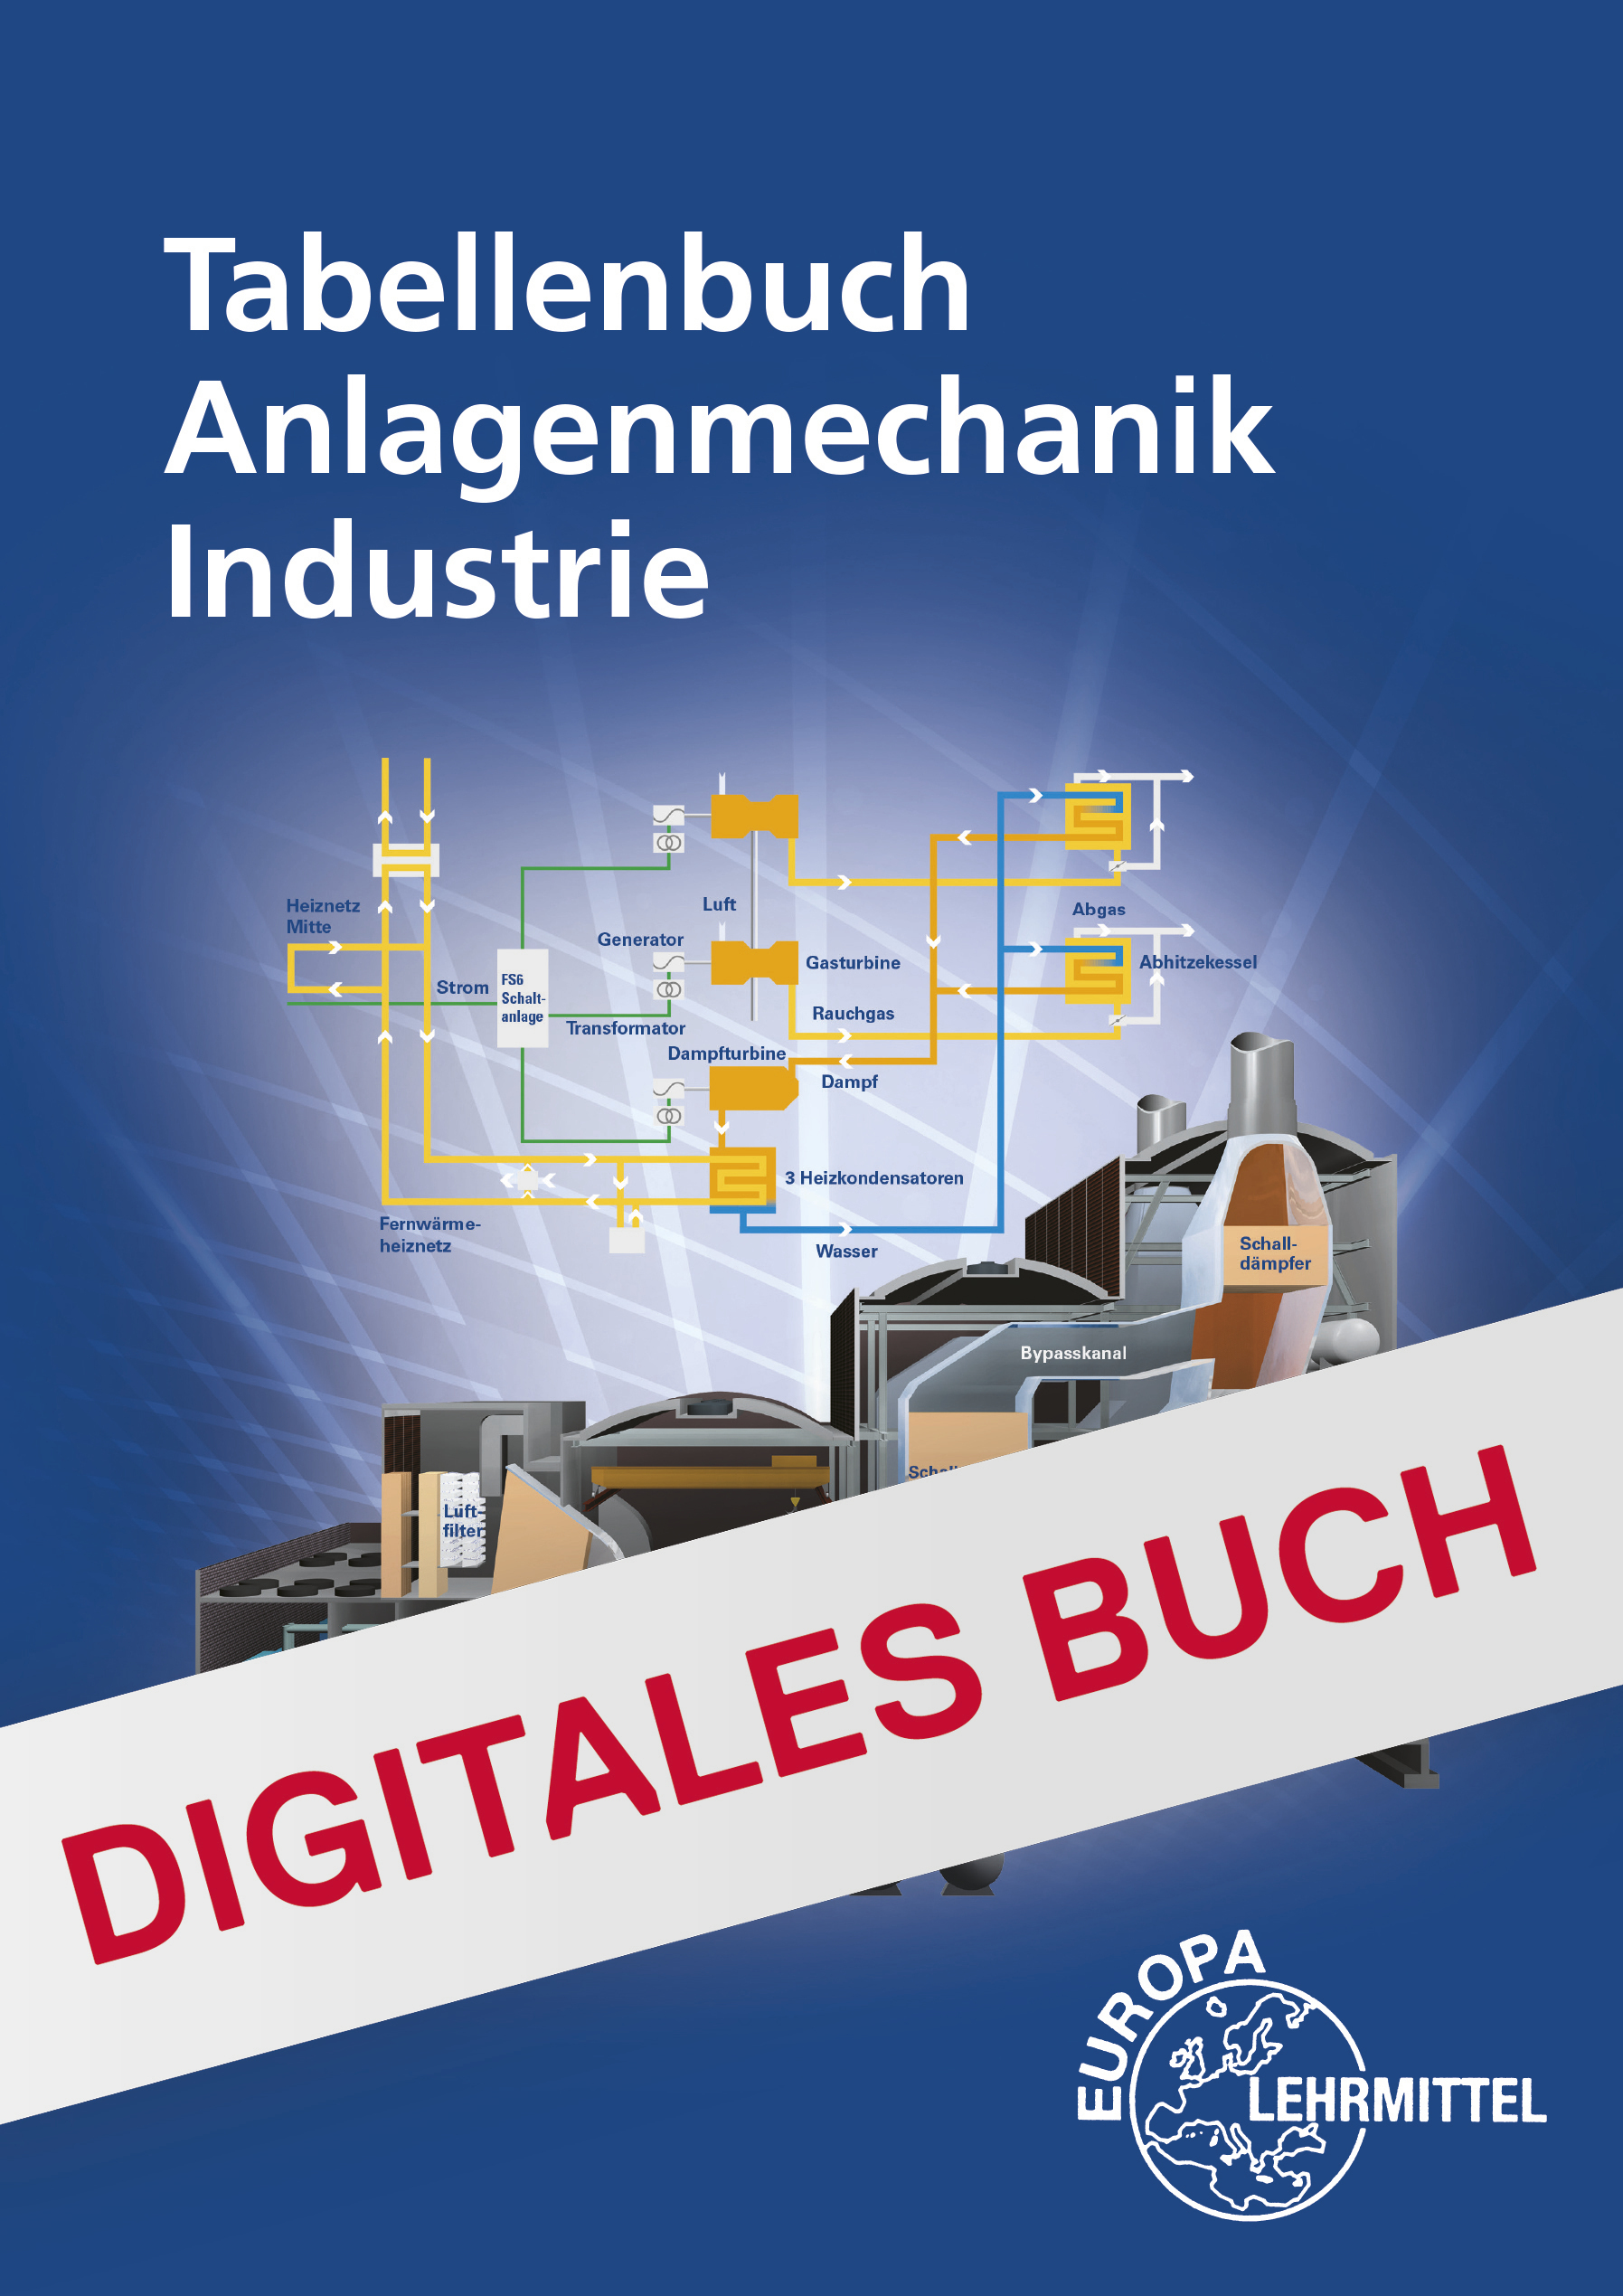 Tabellenbuch Anlagenmechanik Industrie - Digitales Buch